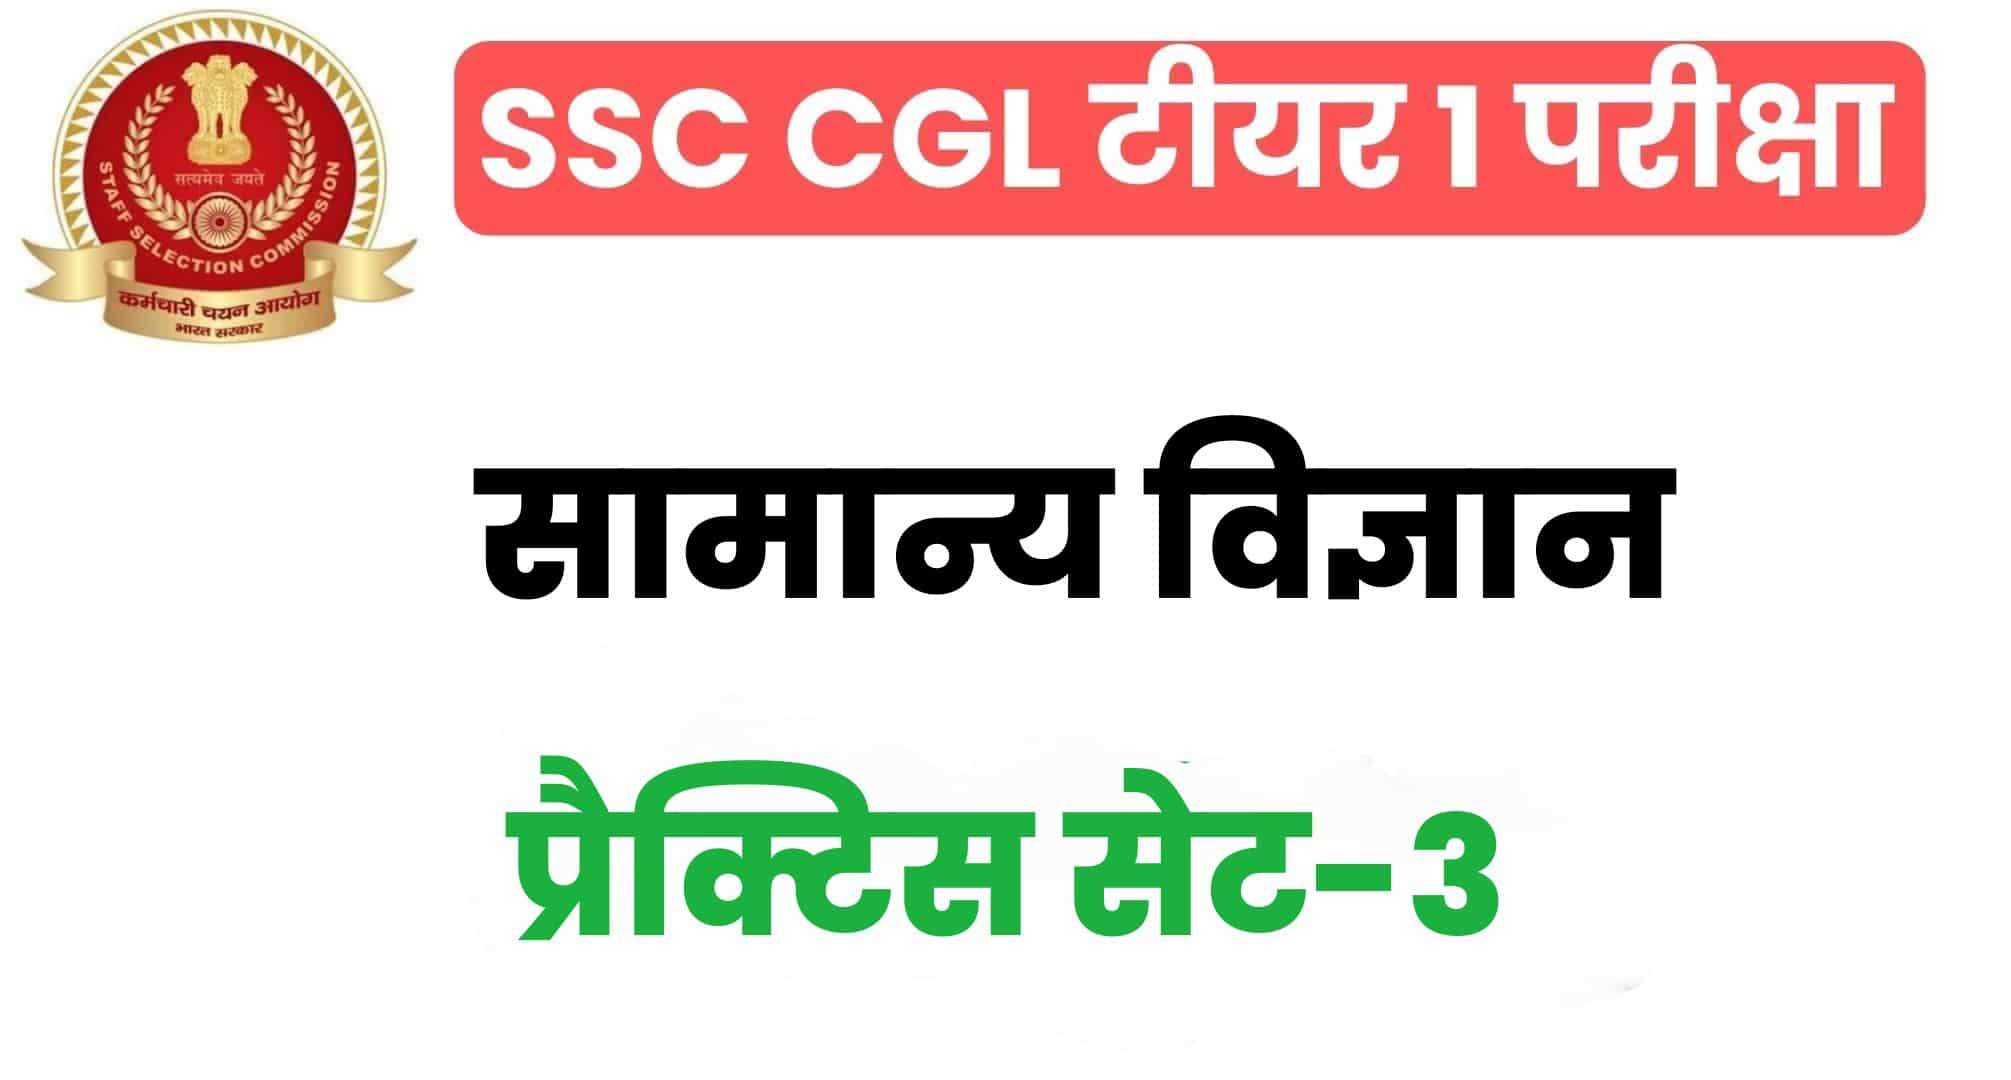 SSC CGL General Science प्रैक्टिस सेट 3 : सामान्य विज्ञान के 25 महत्वपूर्ण प्रश्न, परीक्षा से पहले पढ़ लें